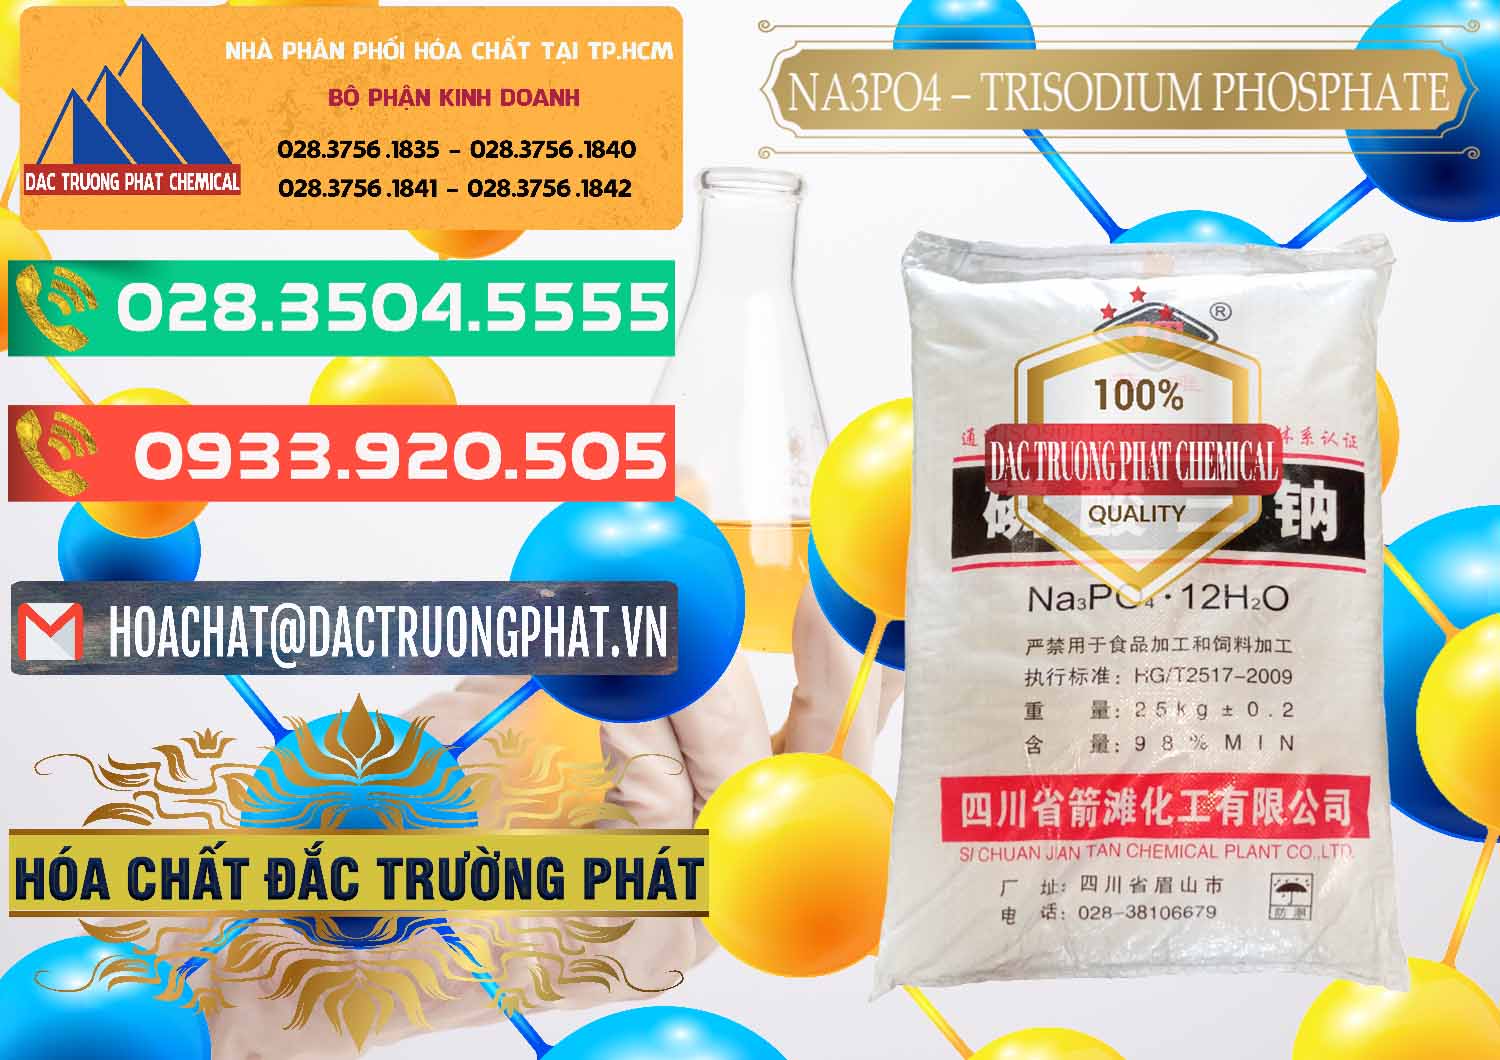 Đơn vị cung ứng & bán Na3PO4 – Trisodium Phosphate Trung Quốc China JT - 0102 - Nơi chuyên nhập khẩu ( phân phối ) hóa chất tại TP.HCM - congtyhoachat.com.vn